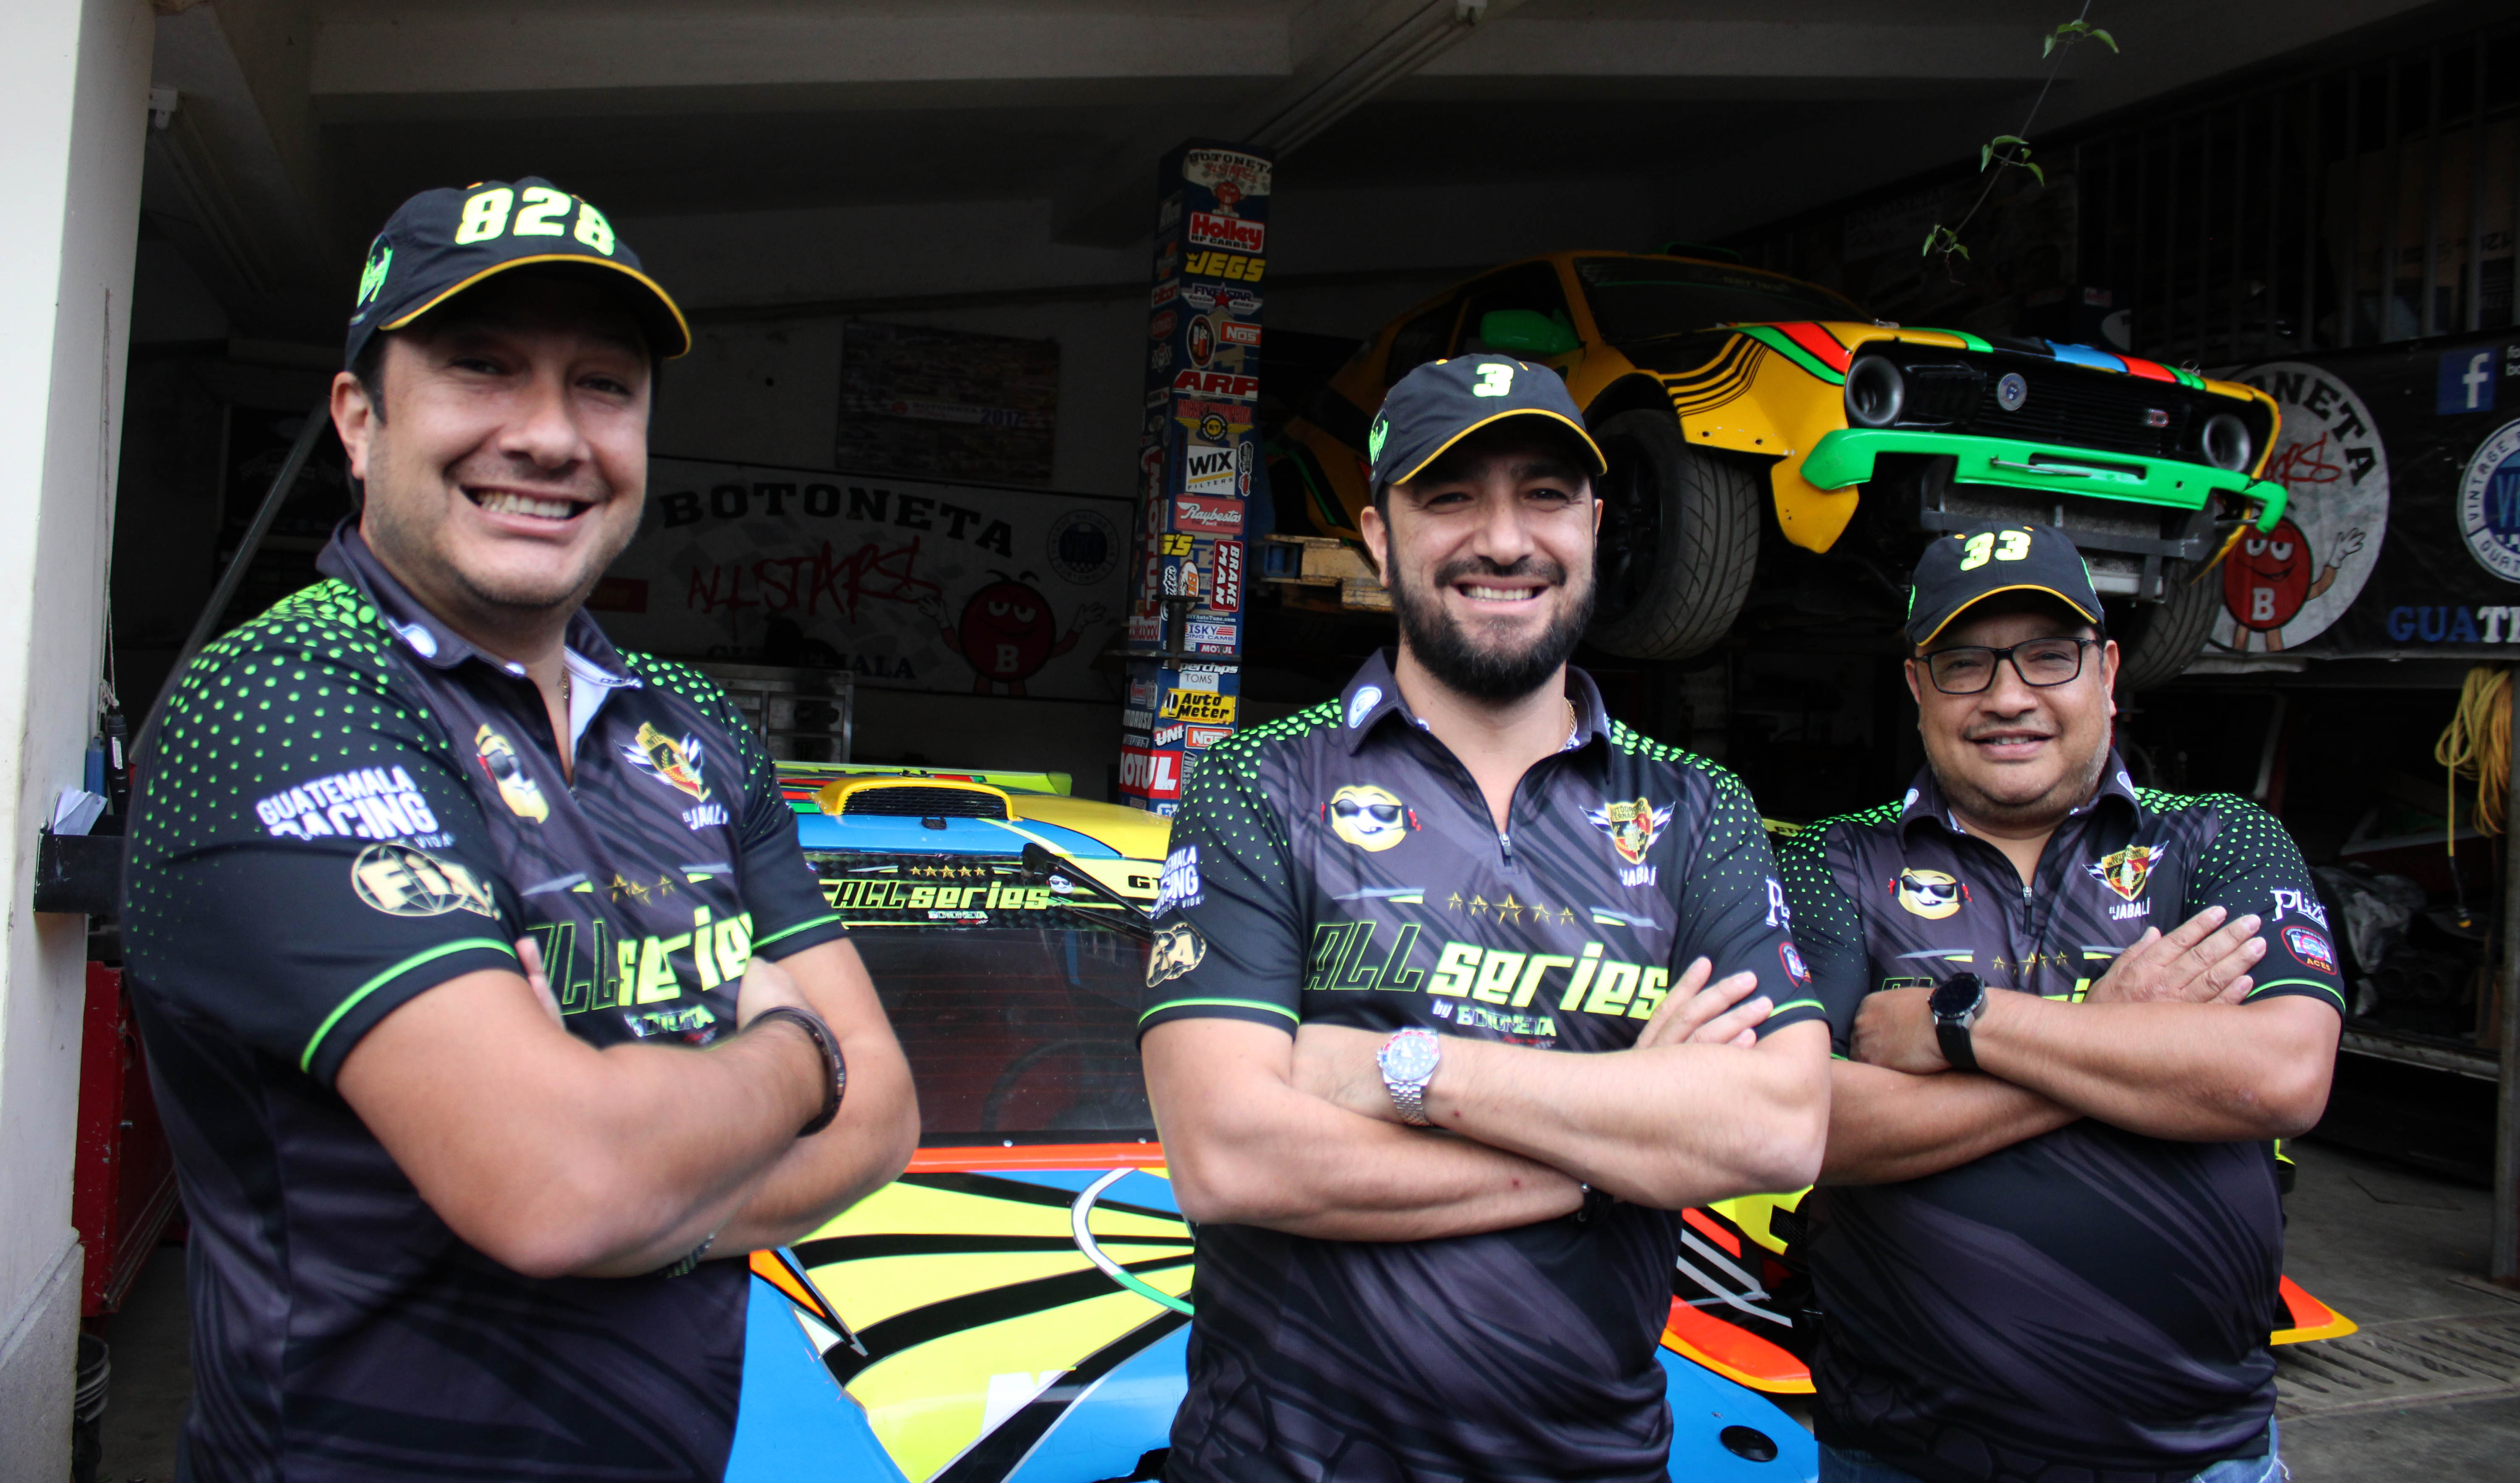 Los pilotos están listos para la competencia del fin de semana. (Foto Prensa Libre: Cortesía)